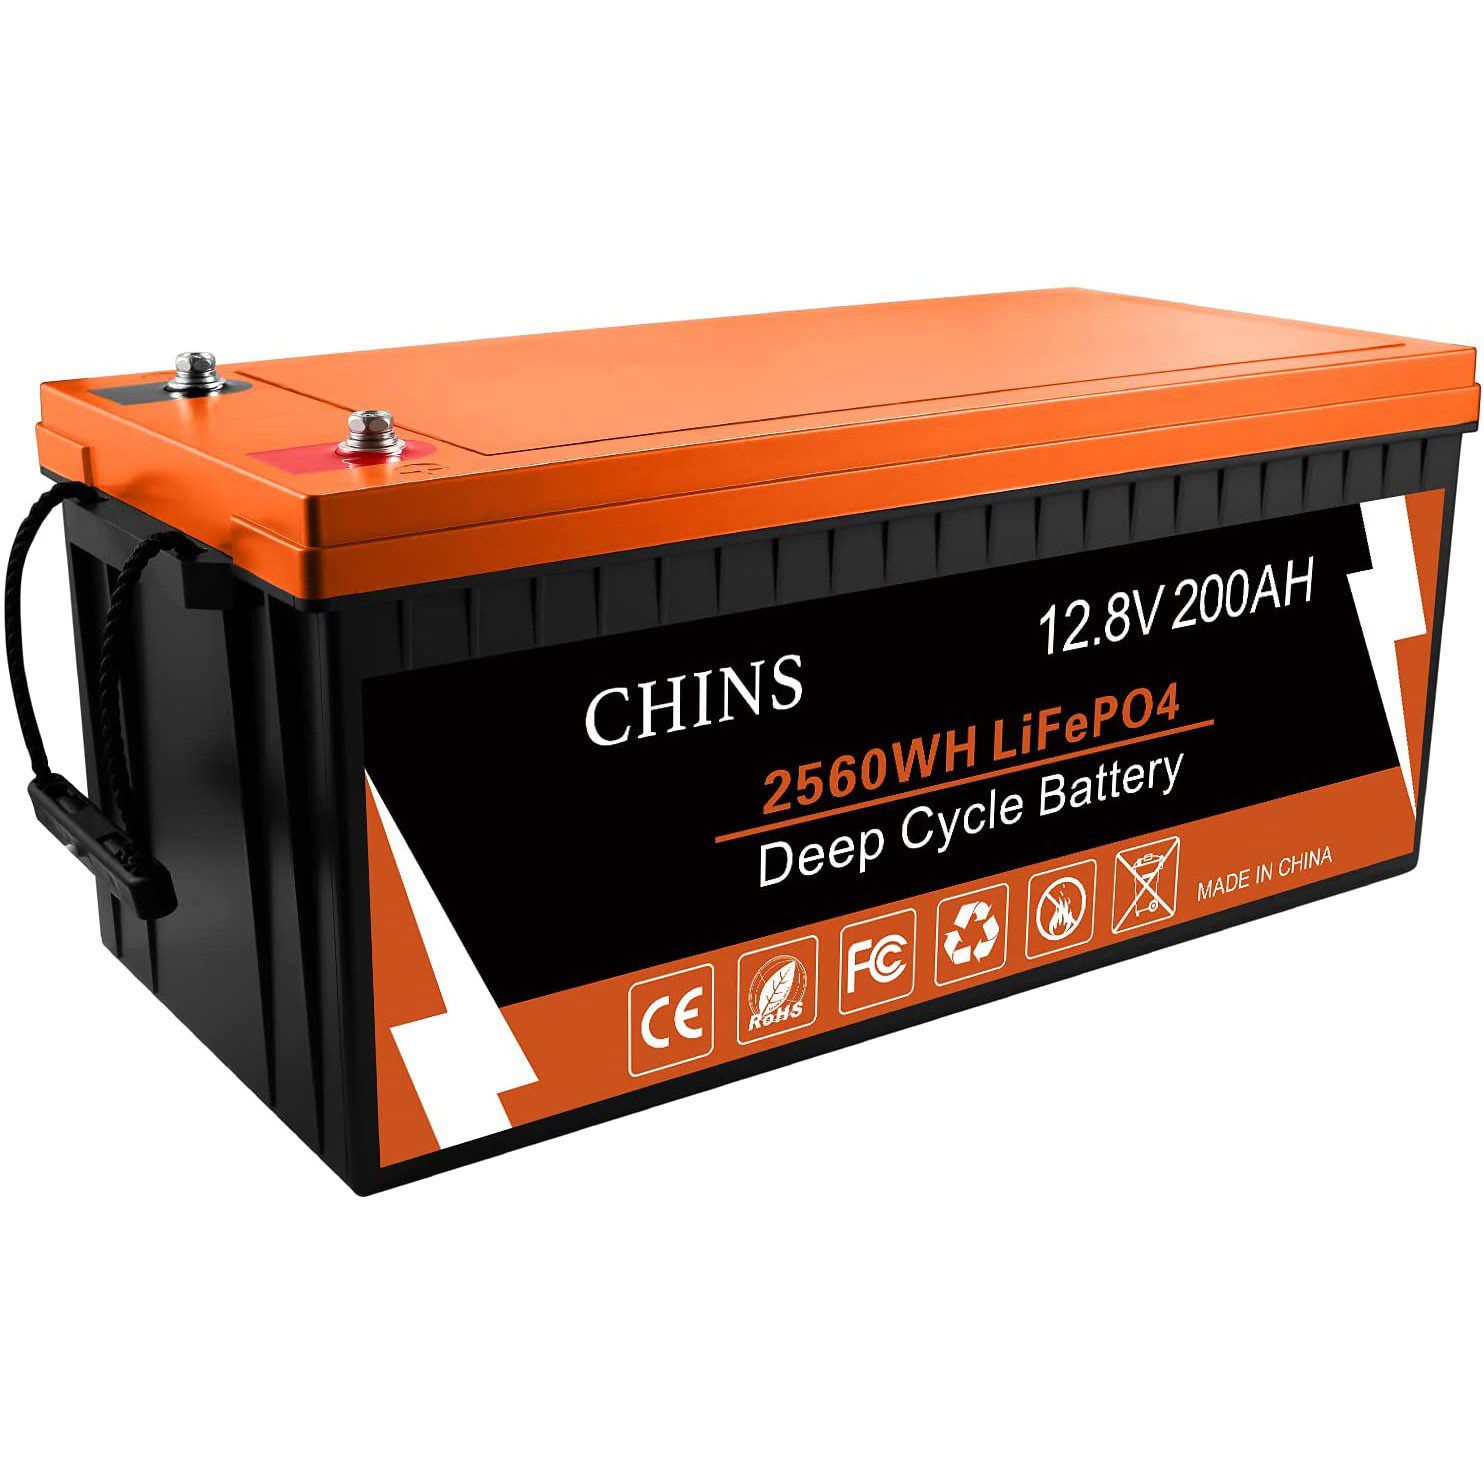 CHINS 200AH Smart 12.8V LiFePO4 Lithium Bluetooth Self-Heating